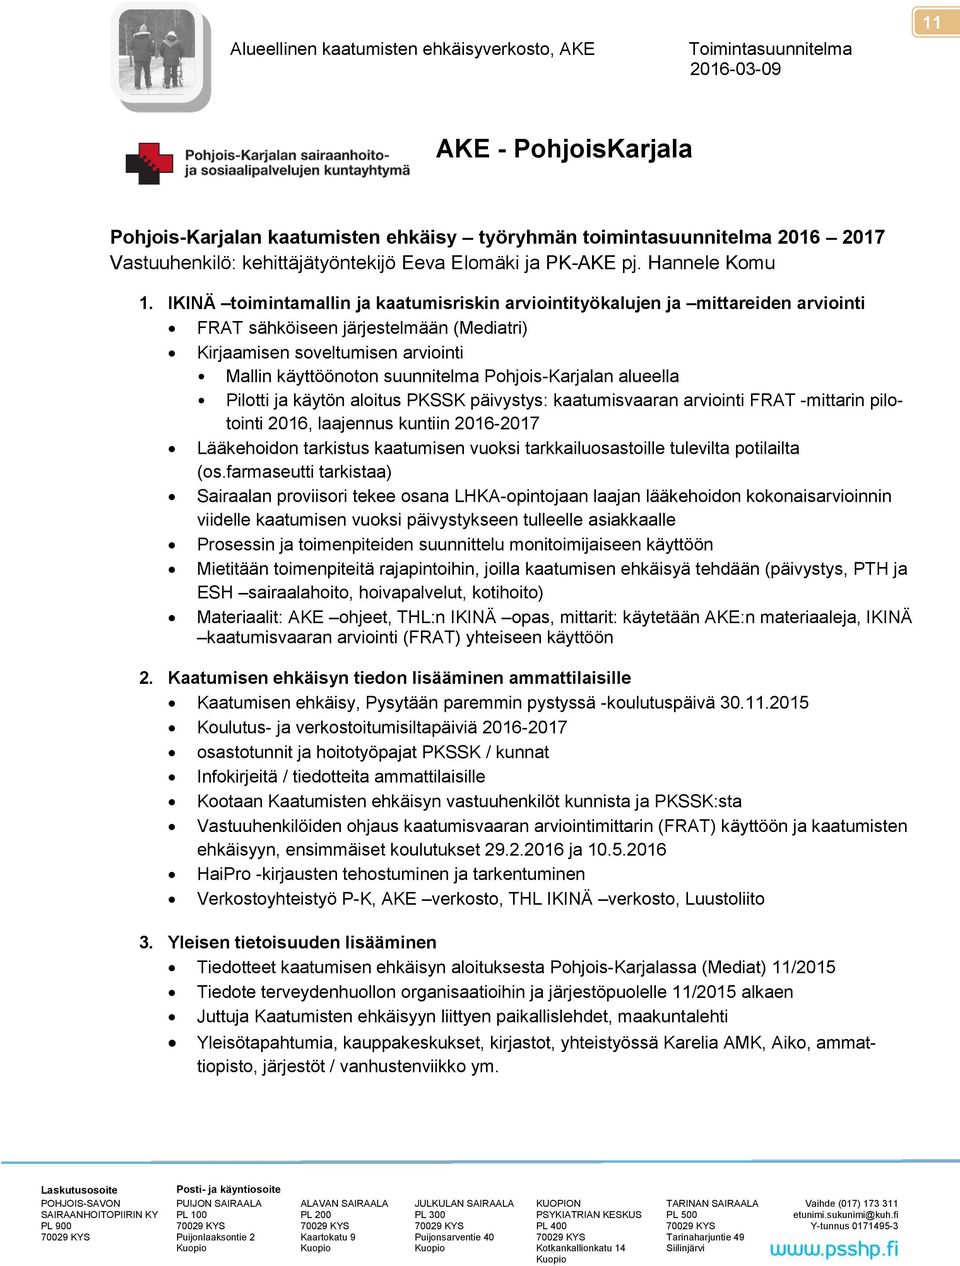 Pohjois-Karjalan alueella Pilotti ja käytön aloitus PKSSK päivystys: kaatumisvaaran arviointi FRAT -mittarin pilotointi 2016, laajennus kuntiin 2016-2017 Lääkehoidon tarkistus kaatumisen vuoksi